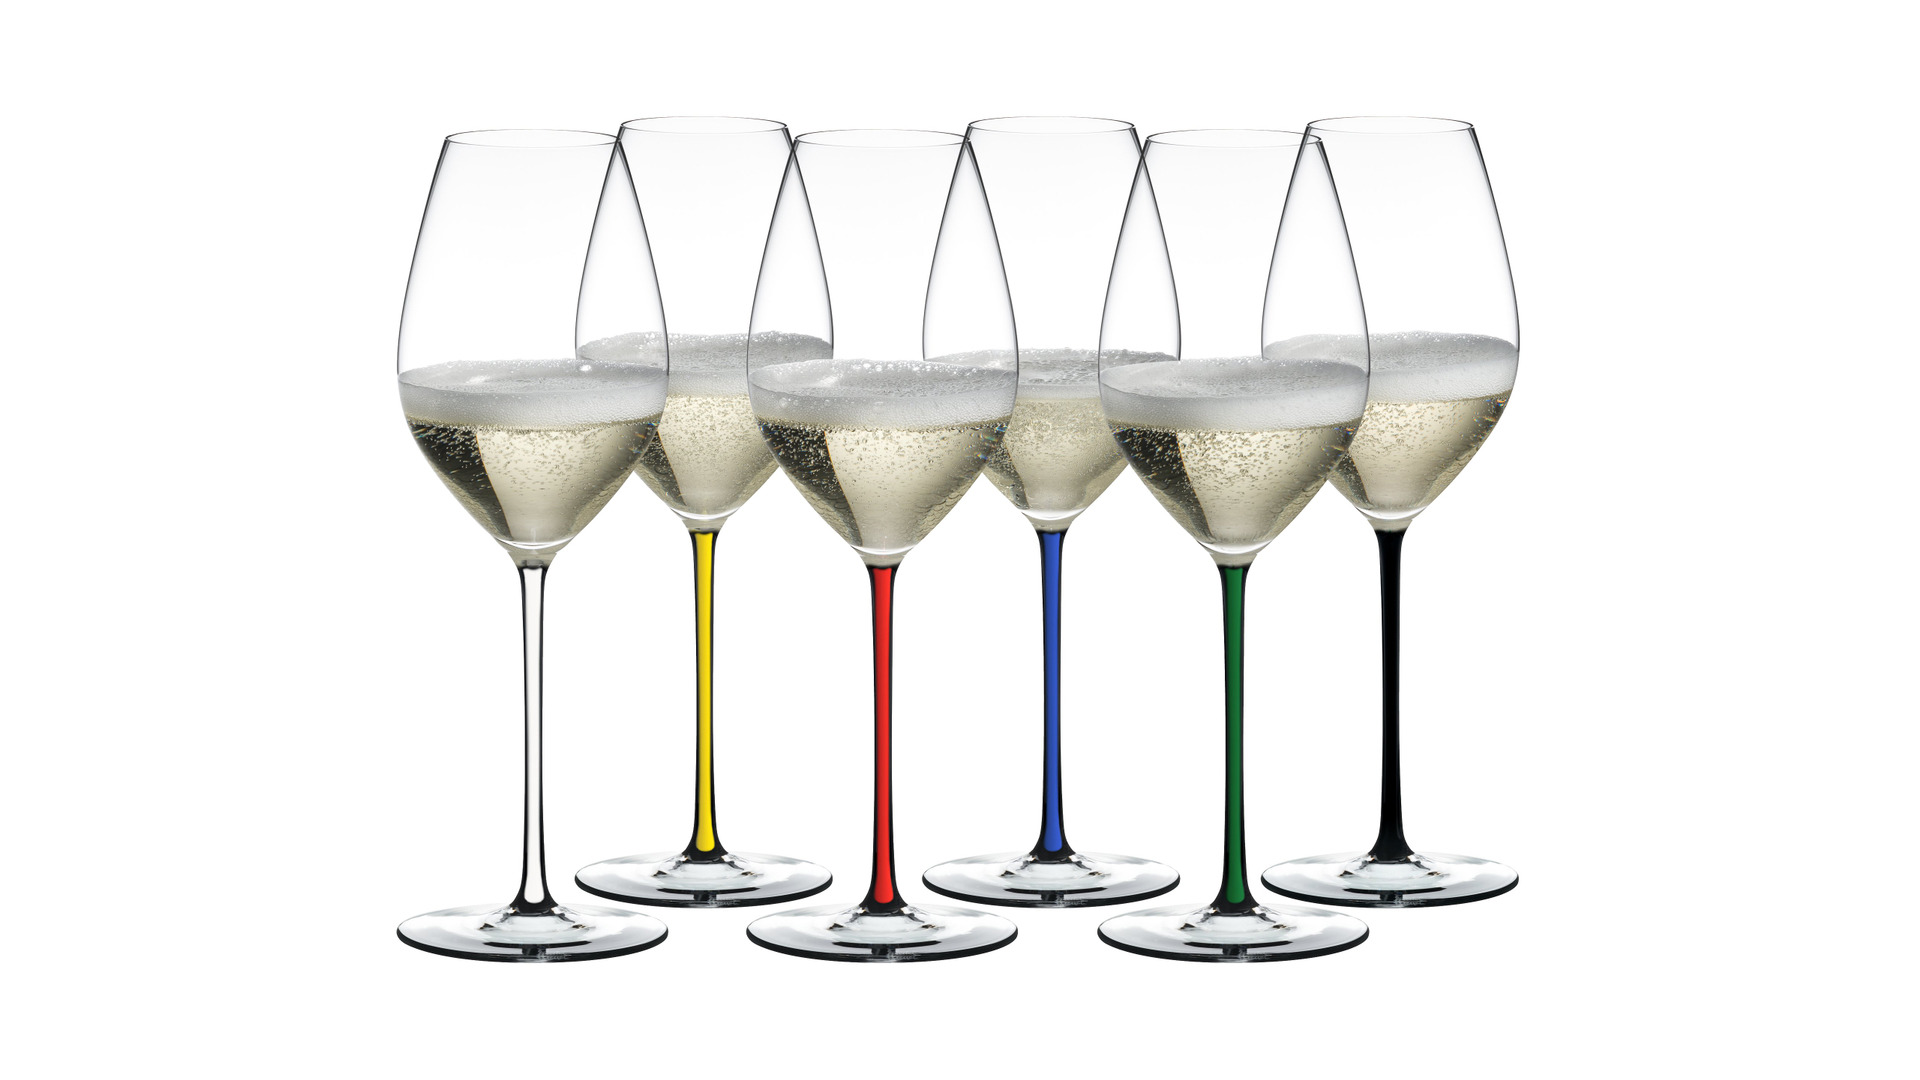 Набор фужеров Riedel Fatto a Mano Champagne Glass 445 мл с разноцветными ножками, 6 шт, стекло хруст